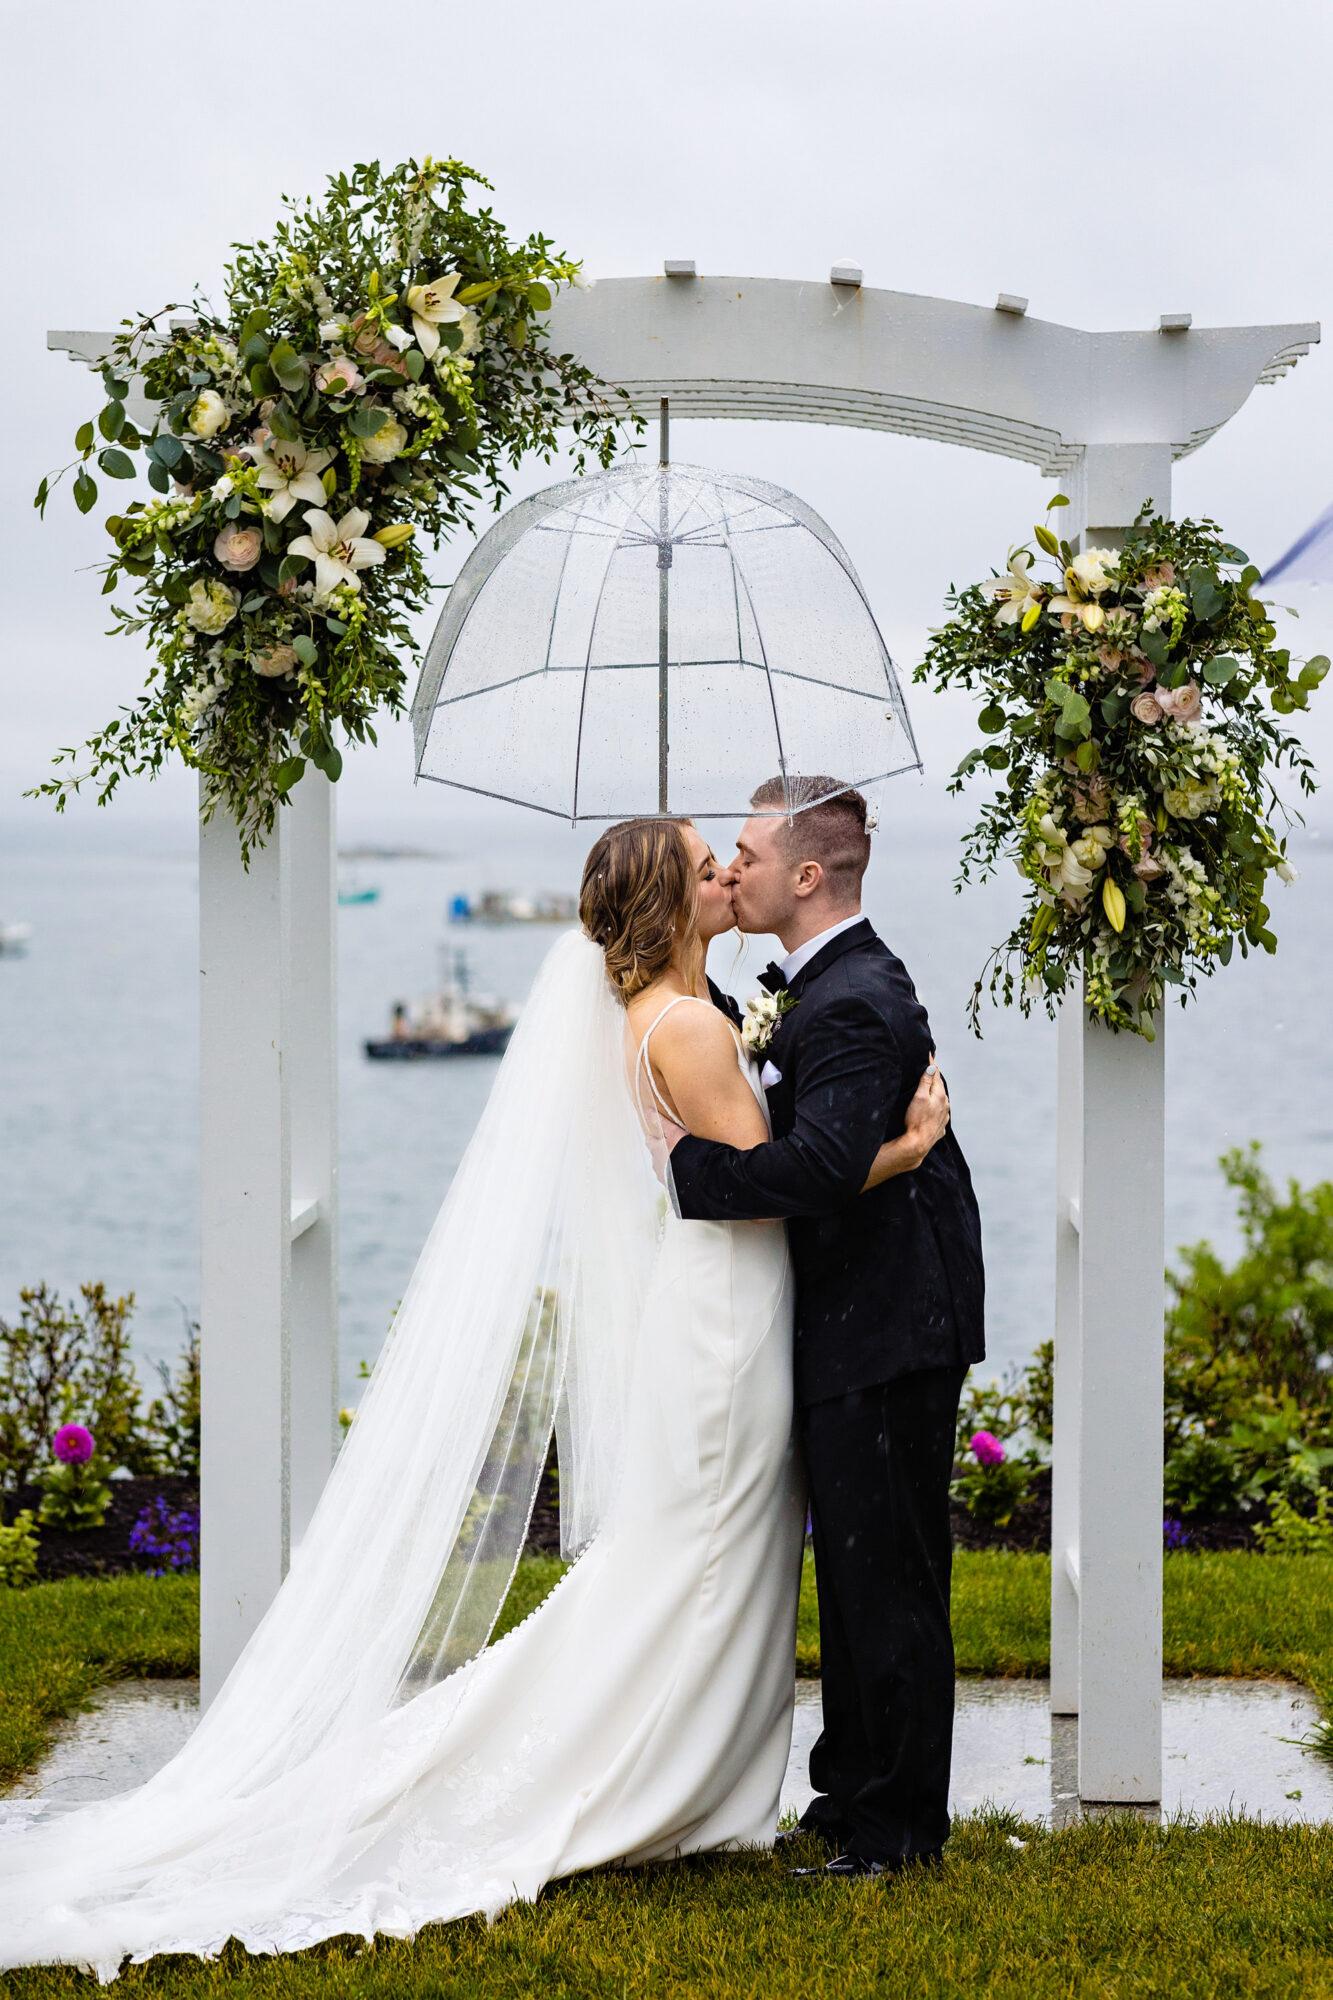 A rainy wedding ceremony at Bar Harbor Inn in Maine